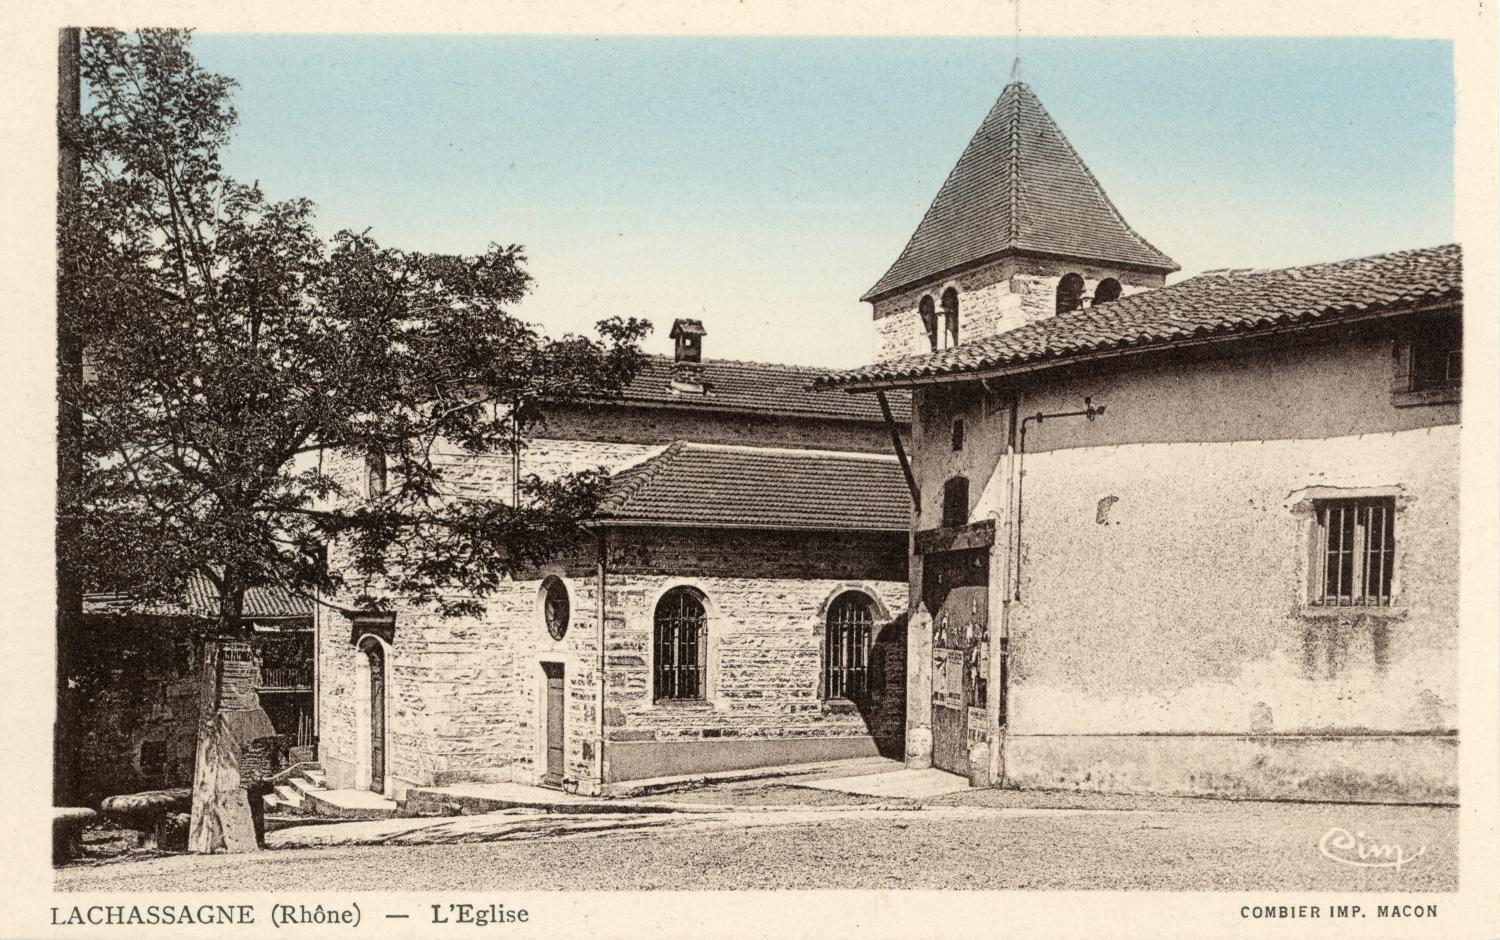 Lachassagne (Rhône). - L'Eglise